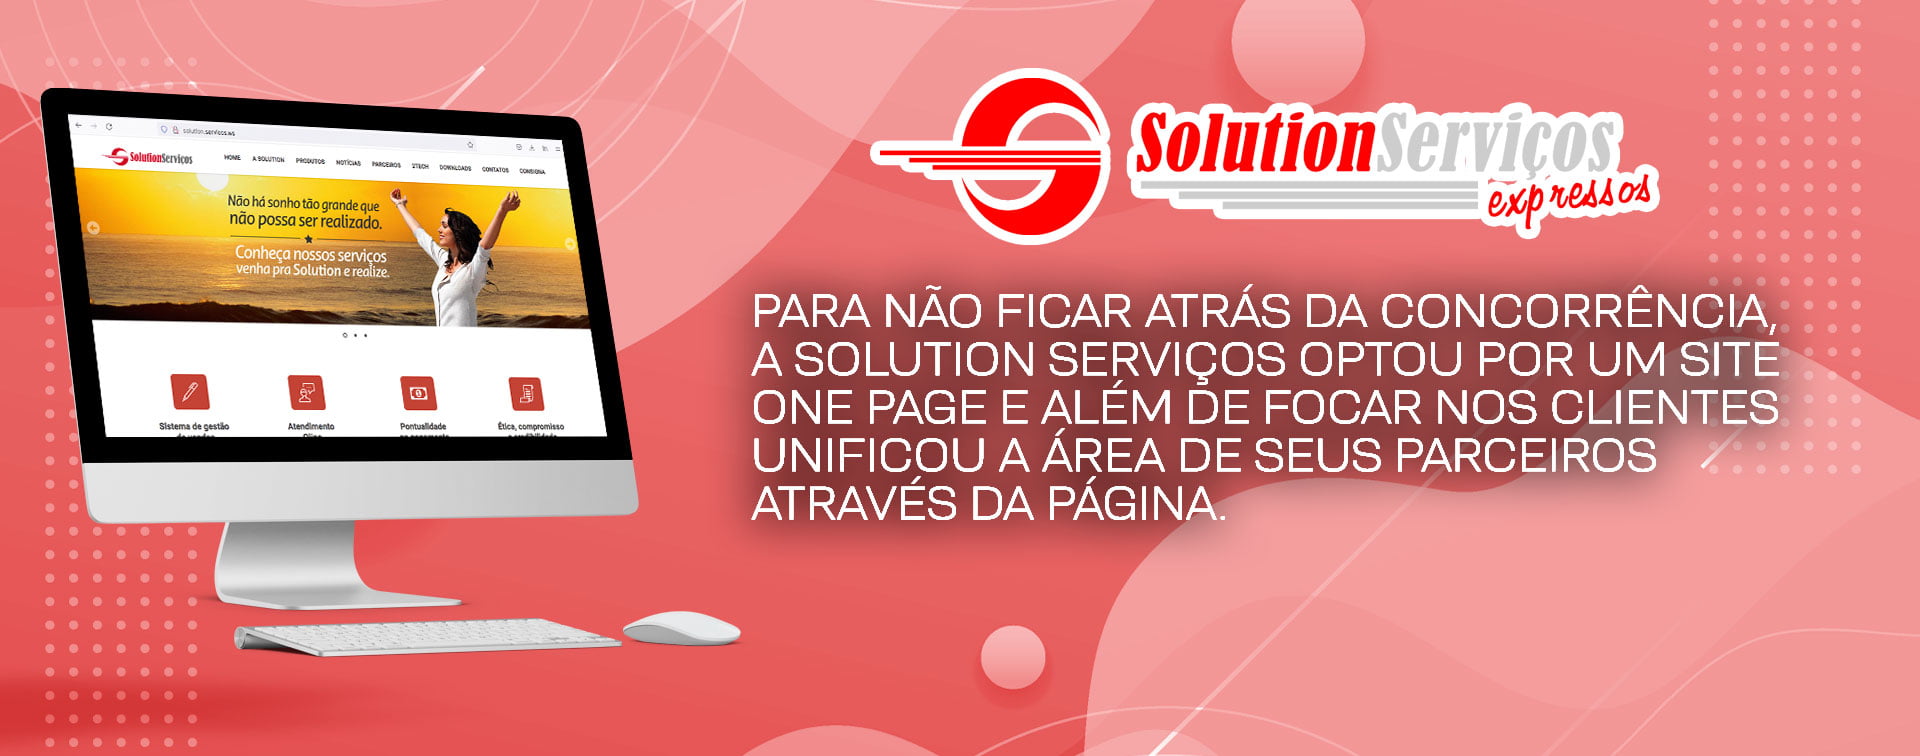 Solution Serviços - Case da Agência Davs de Marketing Digital em Fortaleza